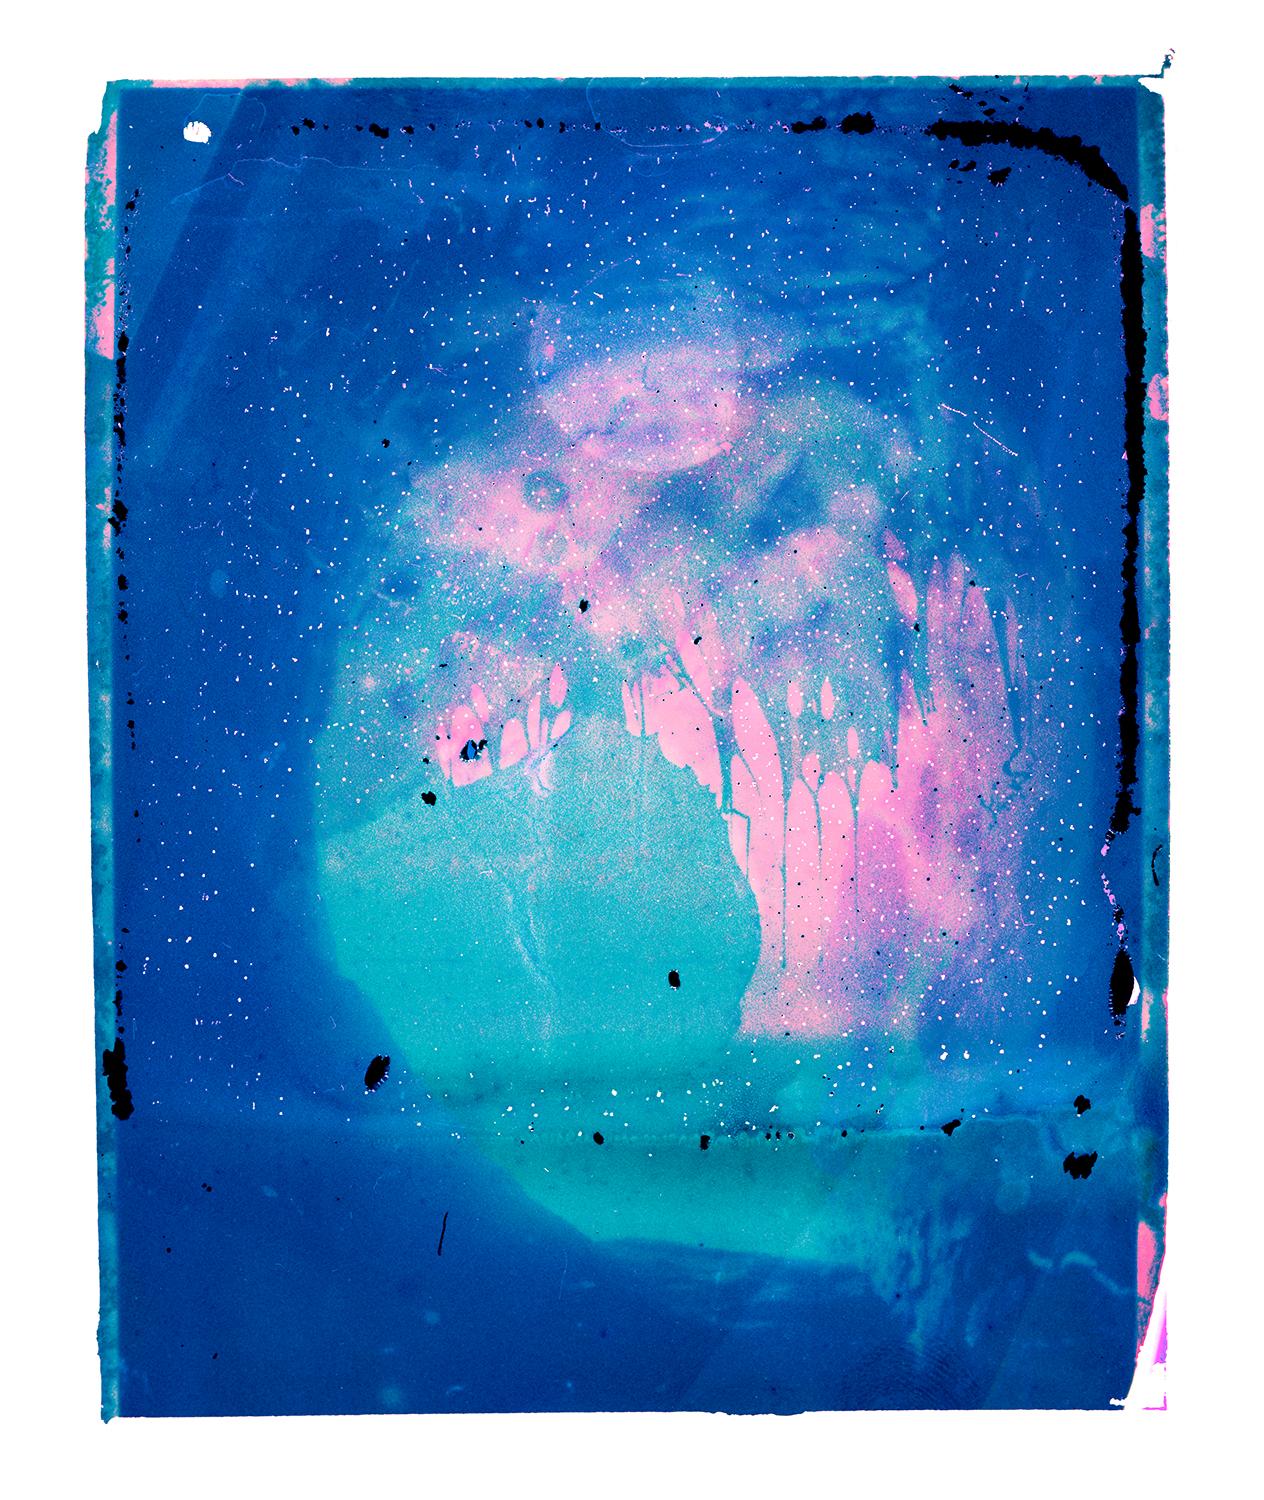 Untergrundwasser II  - Zeitgenössisch, Polaroid, Fotografie, Kindheit, abstrakt